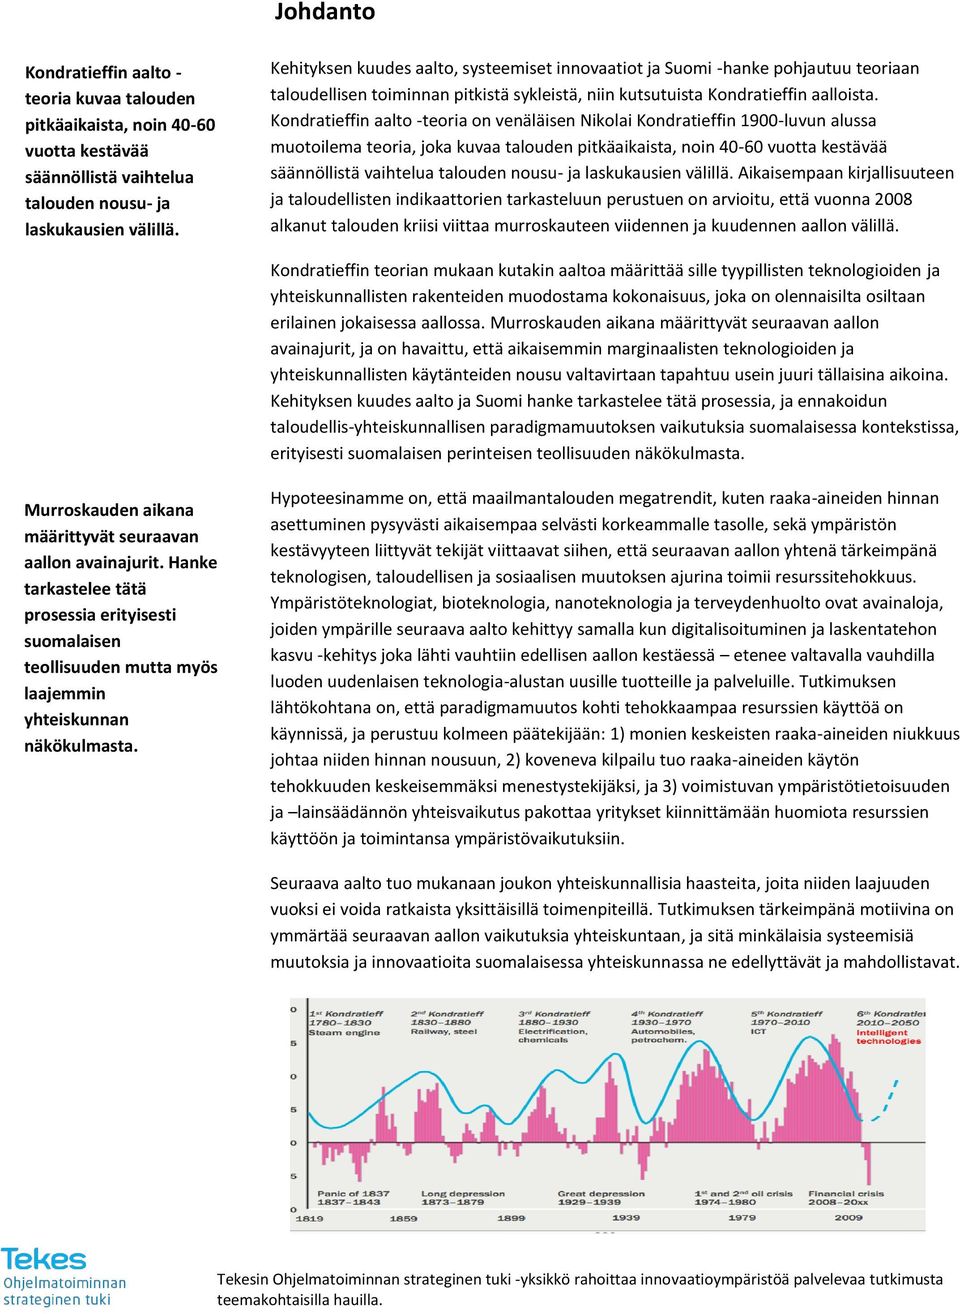 Kondratieffin aalto -teoria on venäläisen Nikolai Kondratieffin 1900-luvun alussa muotoilema teoria, joka kuvaa talouden pitkäaikaista, noin 40-60 vuotta kestävää säännöllistä vaihtelua talouden